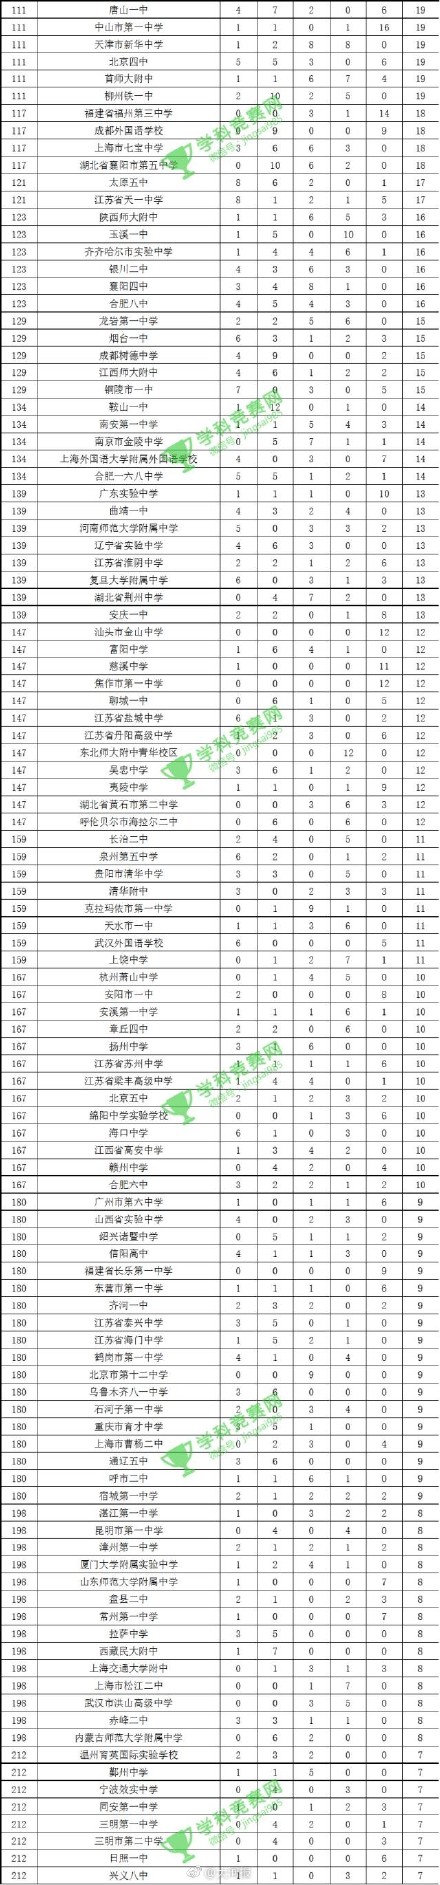 中国学科竞赛500强中学排行榜完整版 你的母校上榜了吗？